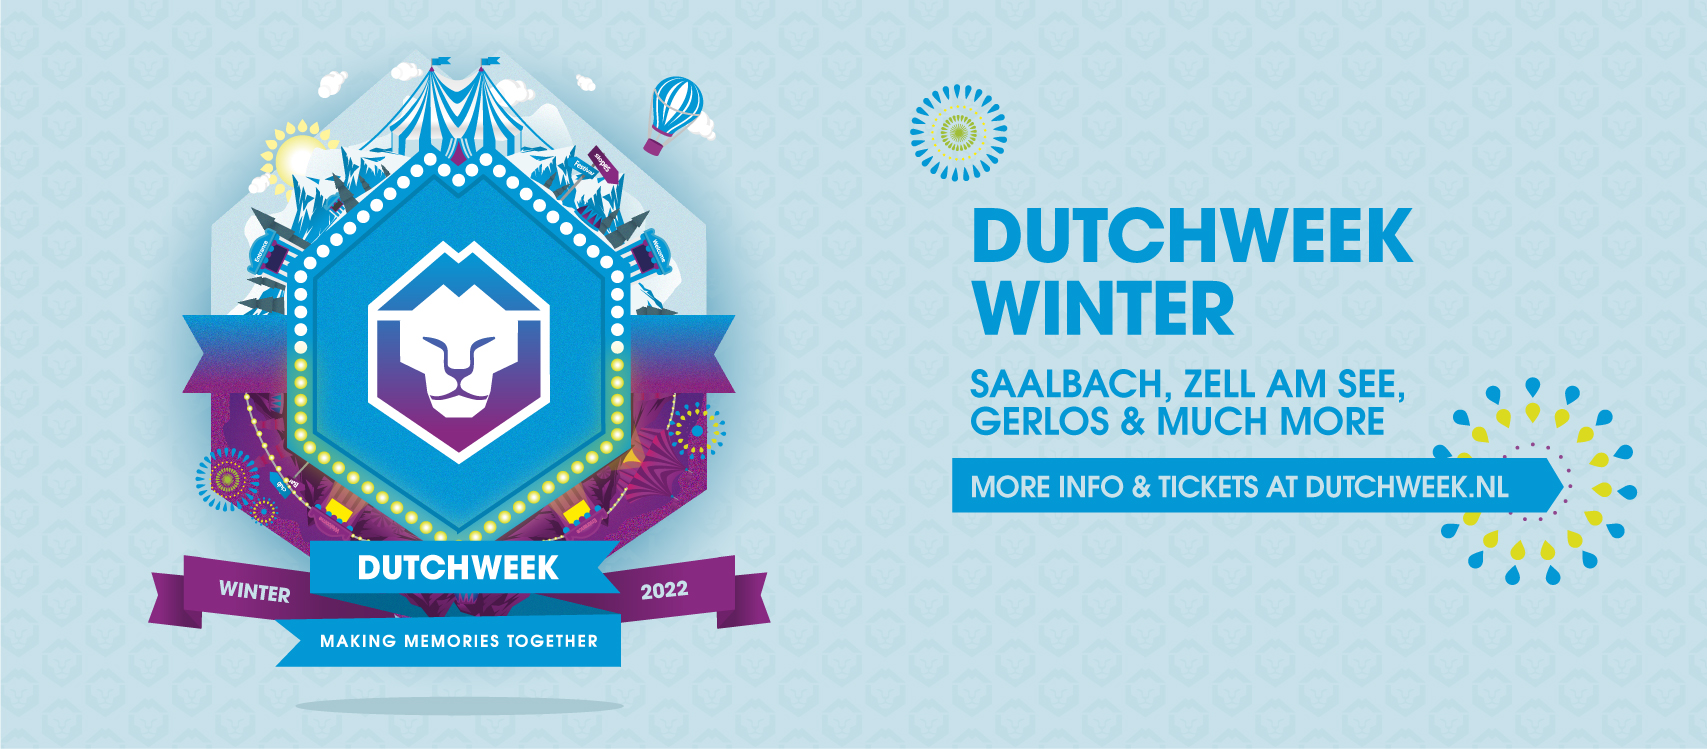 Dutchweek staat klaar voor een knallend wintersportseizoen!